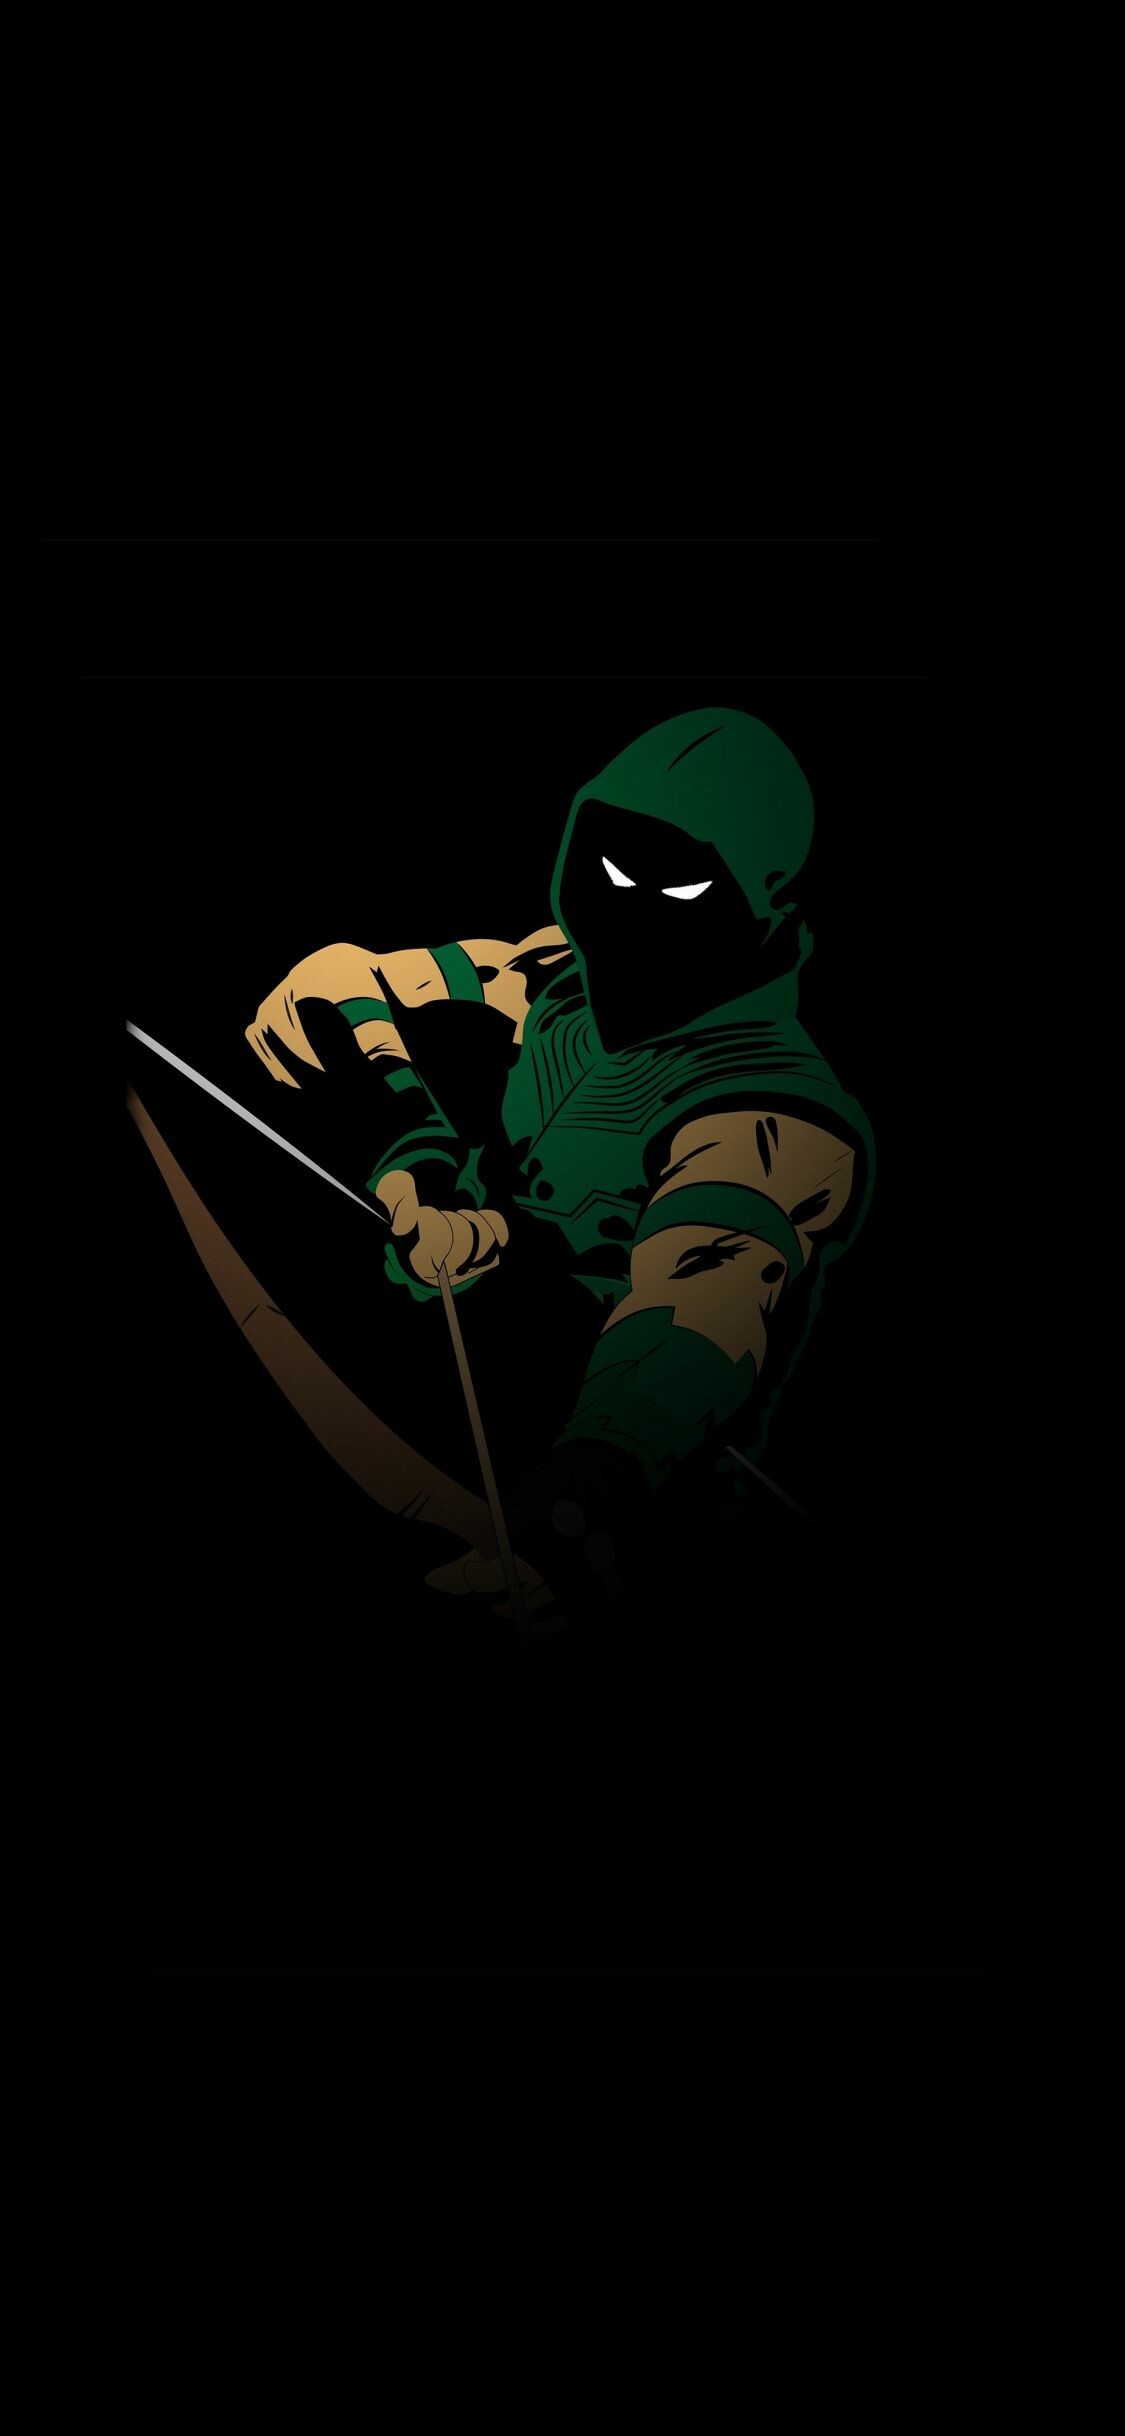 Green Arrow: Superhero, Archer, Minimalistic. 1130x2440 HD Wallpaper.